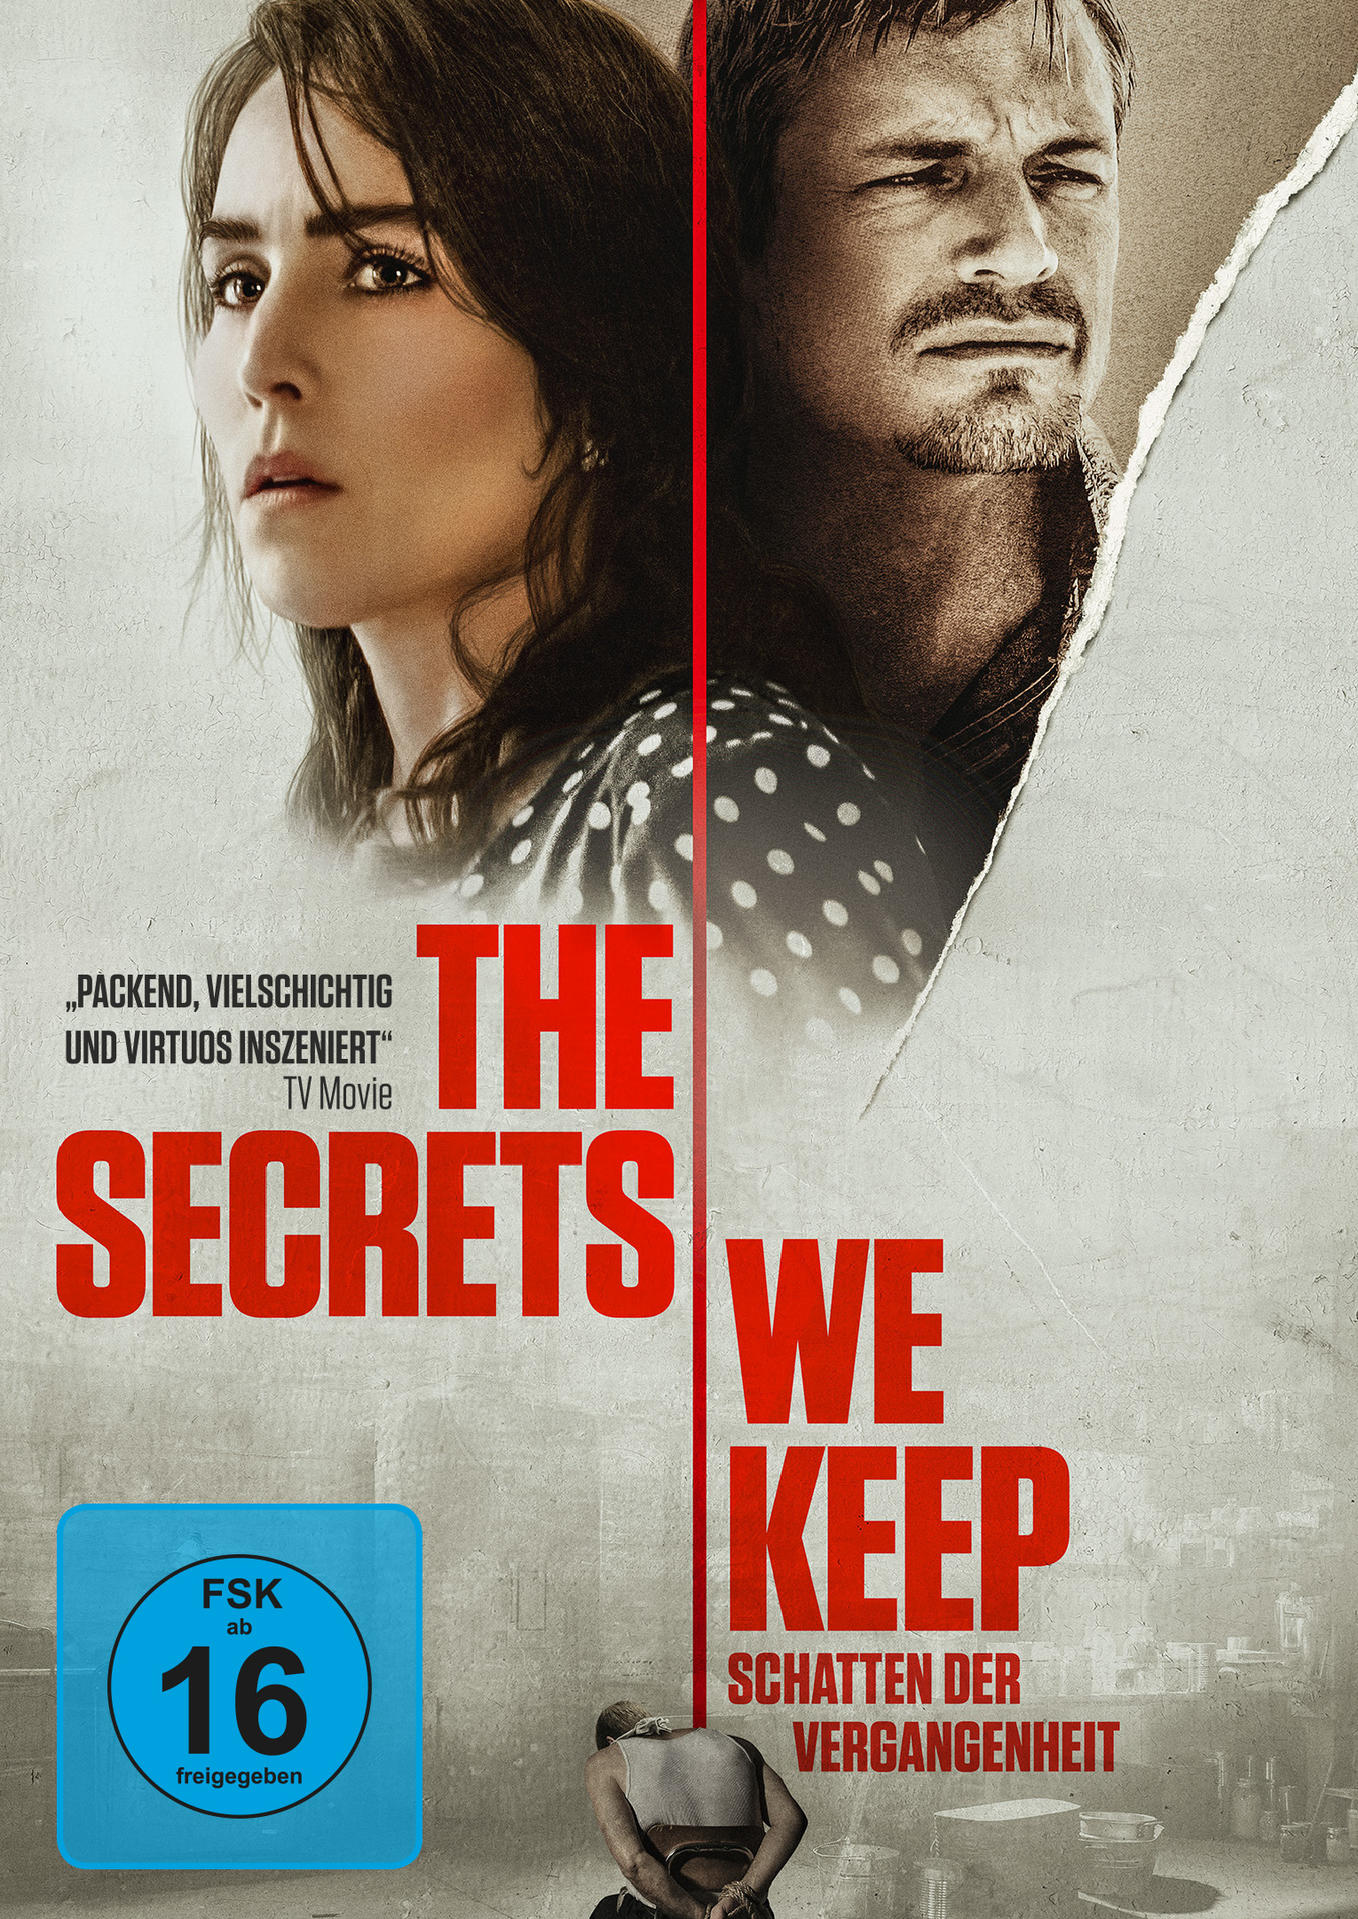 We der Schatten Vergangenheit Secrets The Keep - DVD